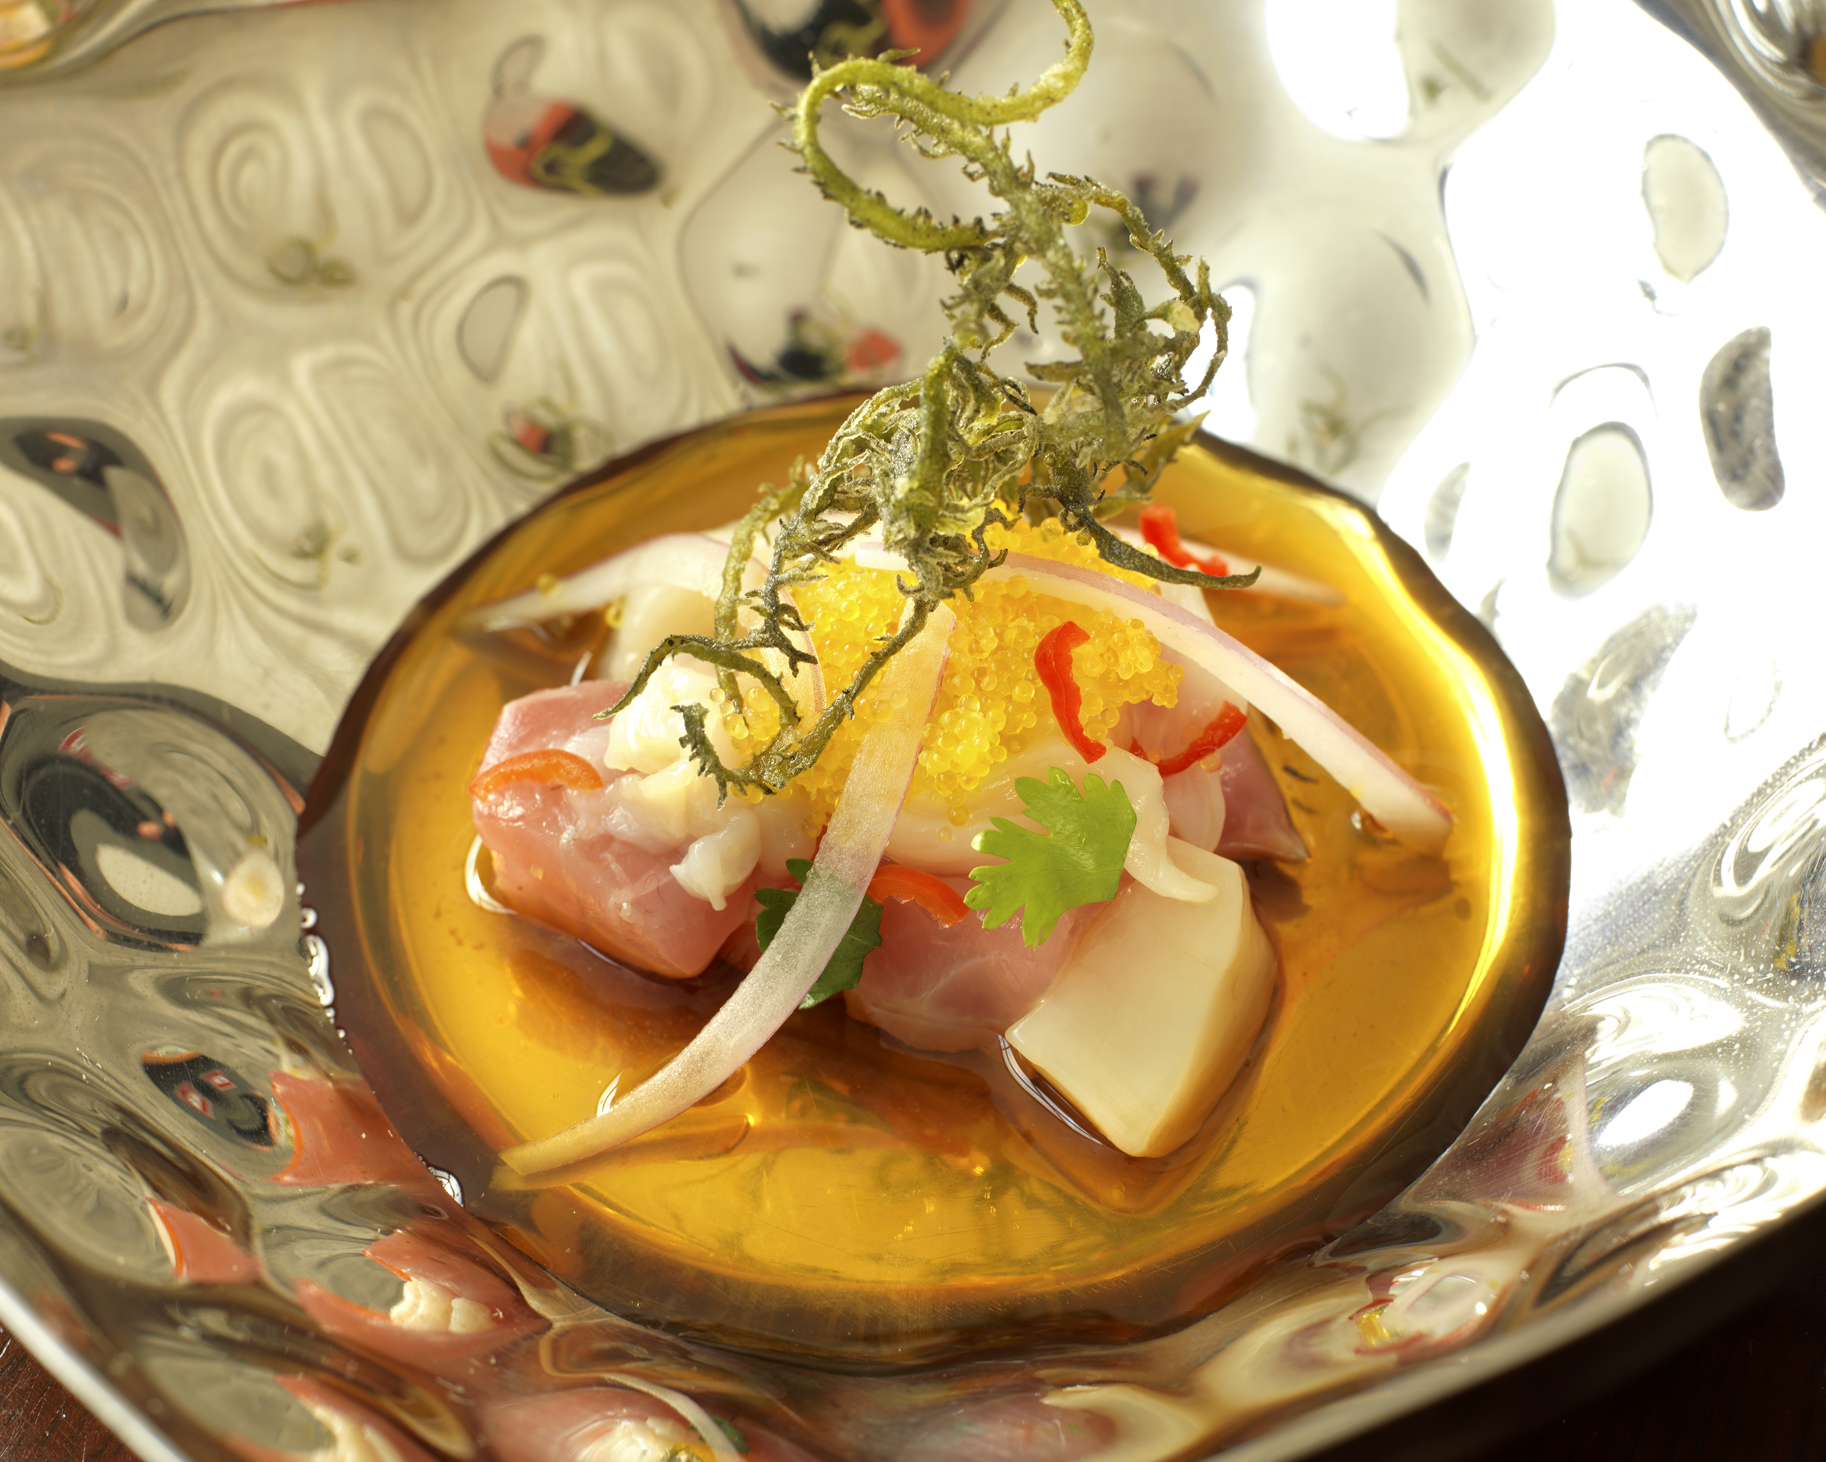 酸橘汁醃魚配方中融合了日本和秘魯食材，充份表現出正宗日式秘魯菜 (Nikkei Cuisine) 的味道。採用的鮮魚和海鮮均以檸檬，辣椒，蒜頭，生薑，醬油和芫茜醃製